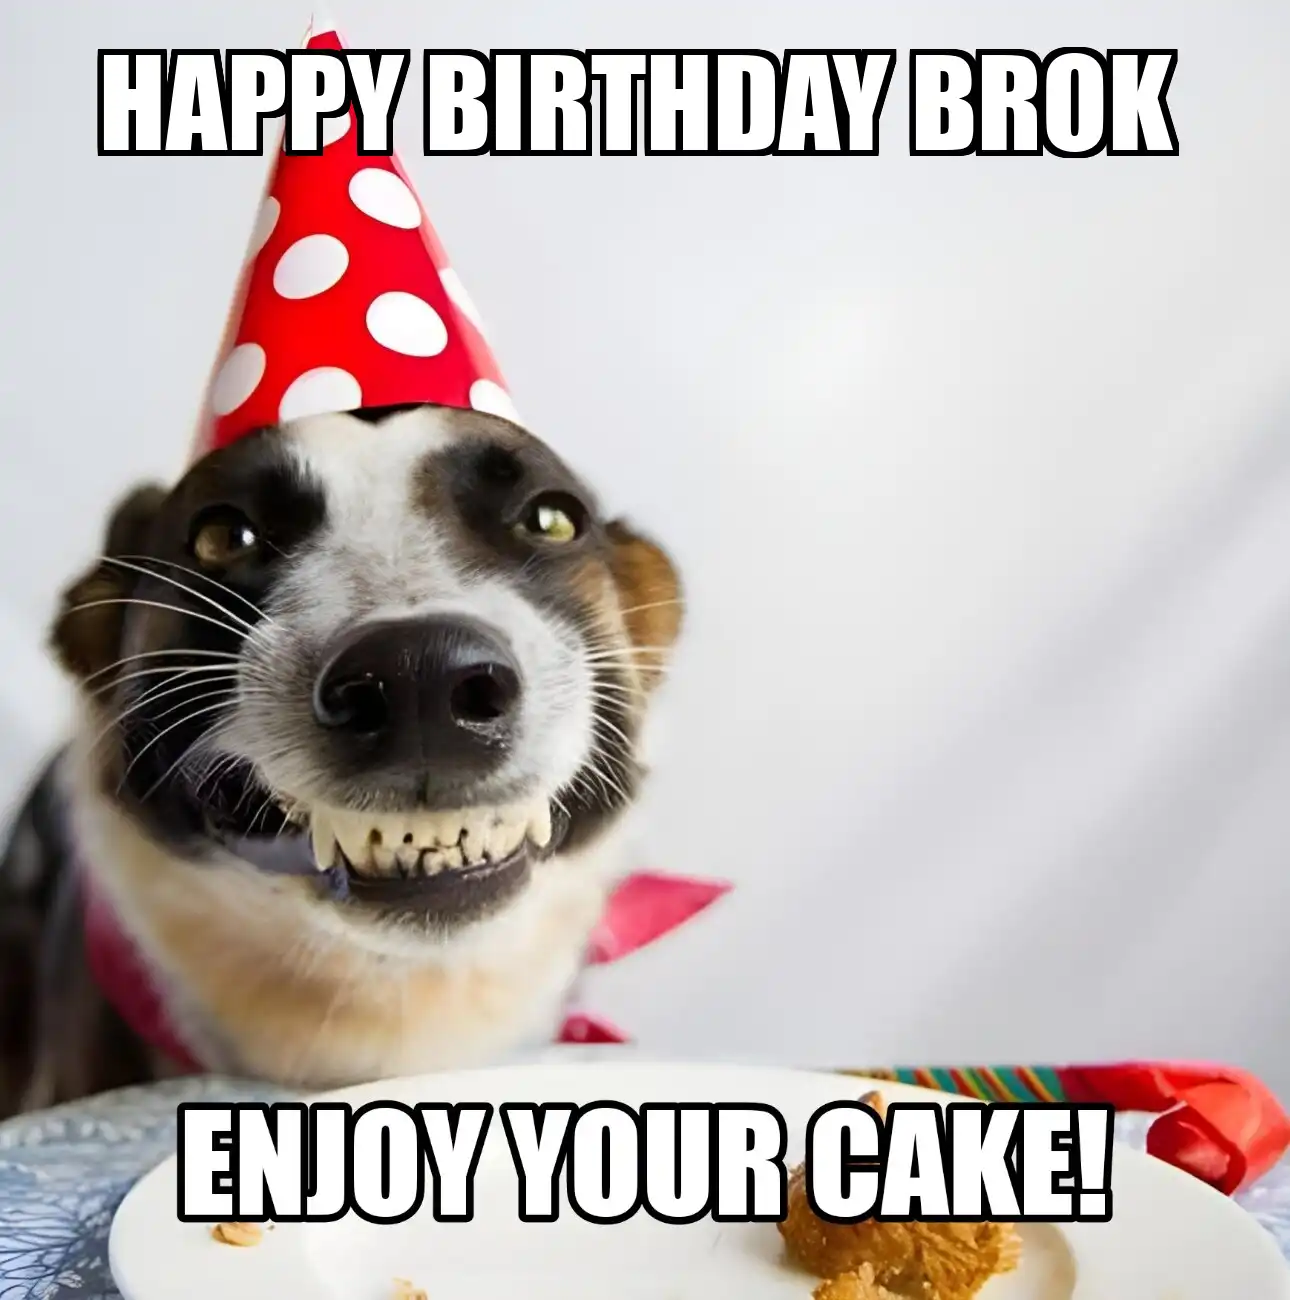 Happy Birthday Brok Enjoy Your Cake Dog Meme